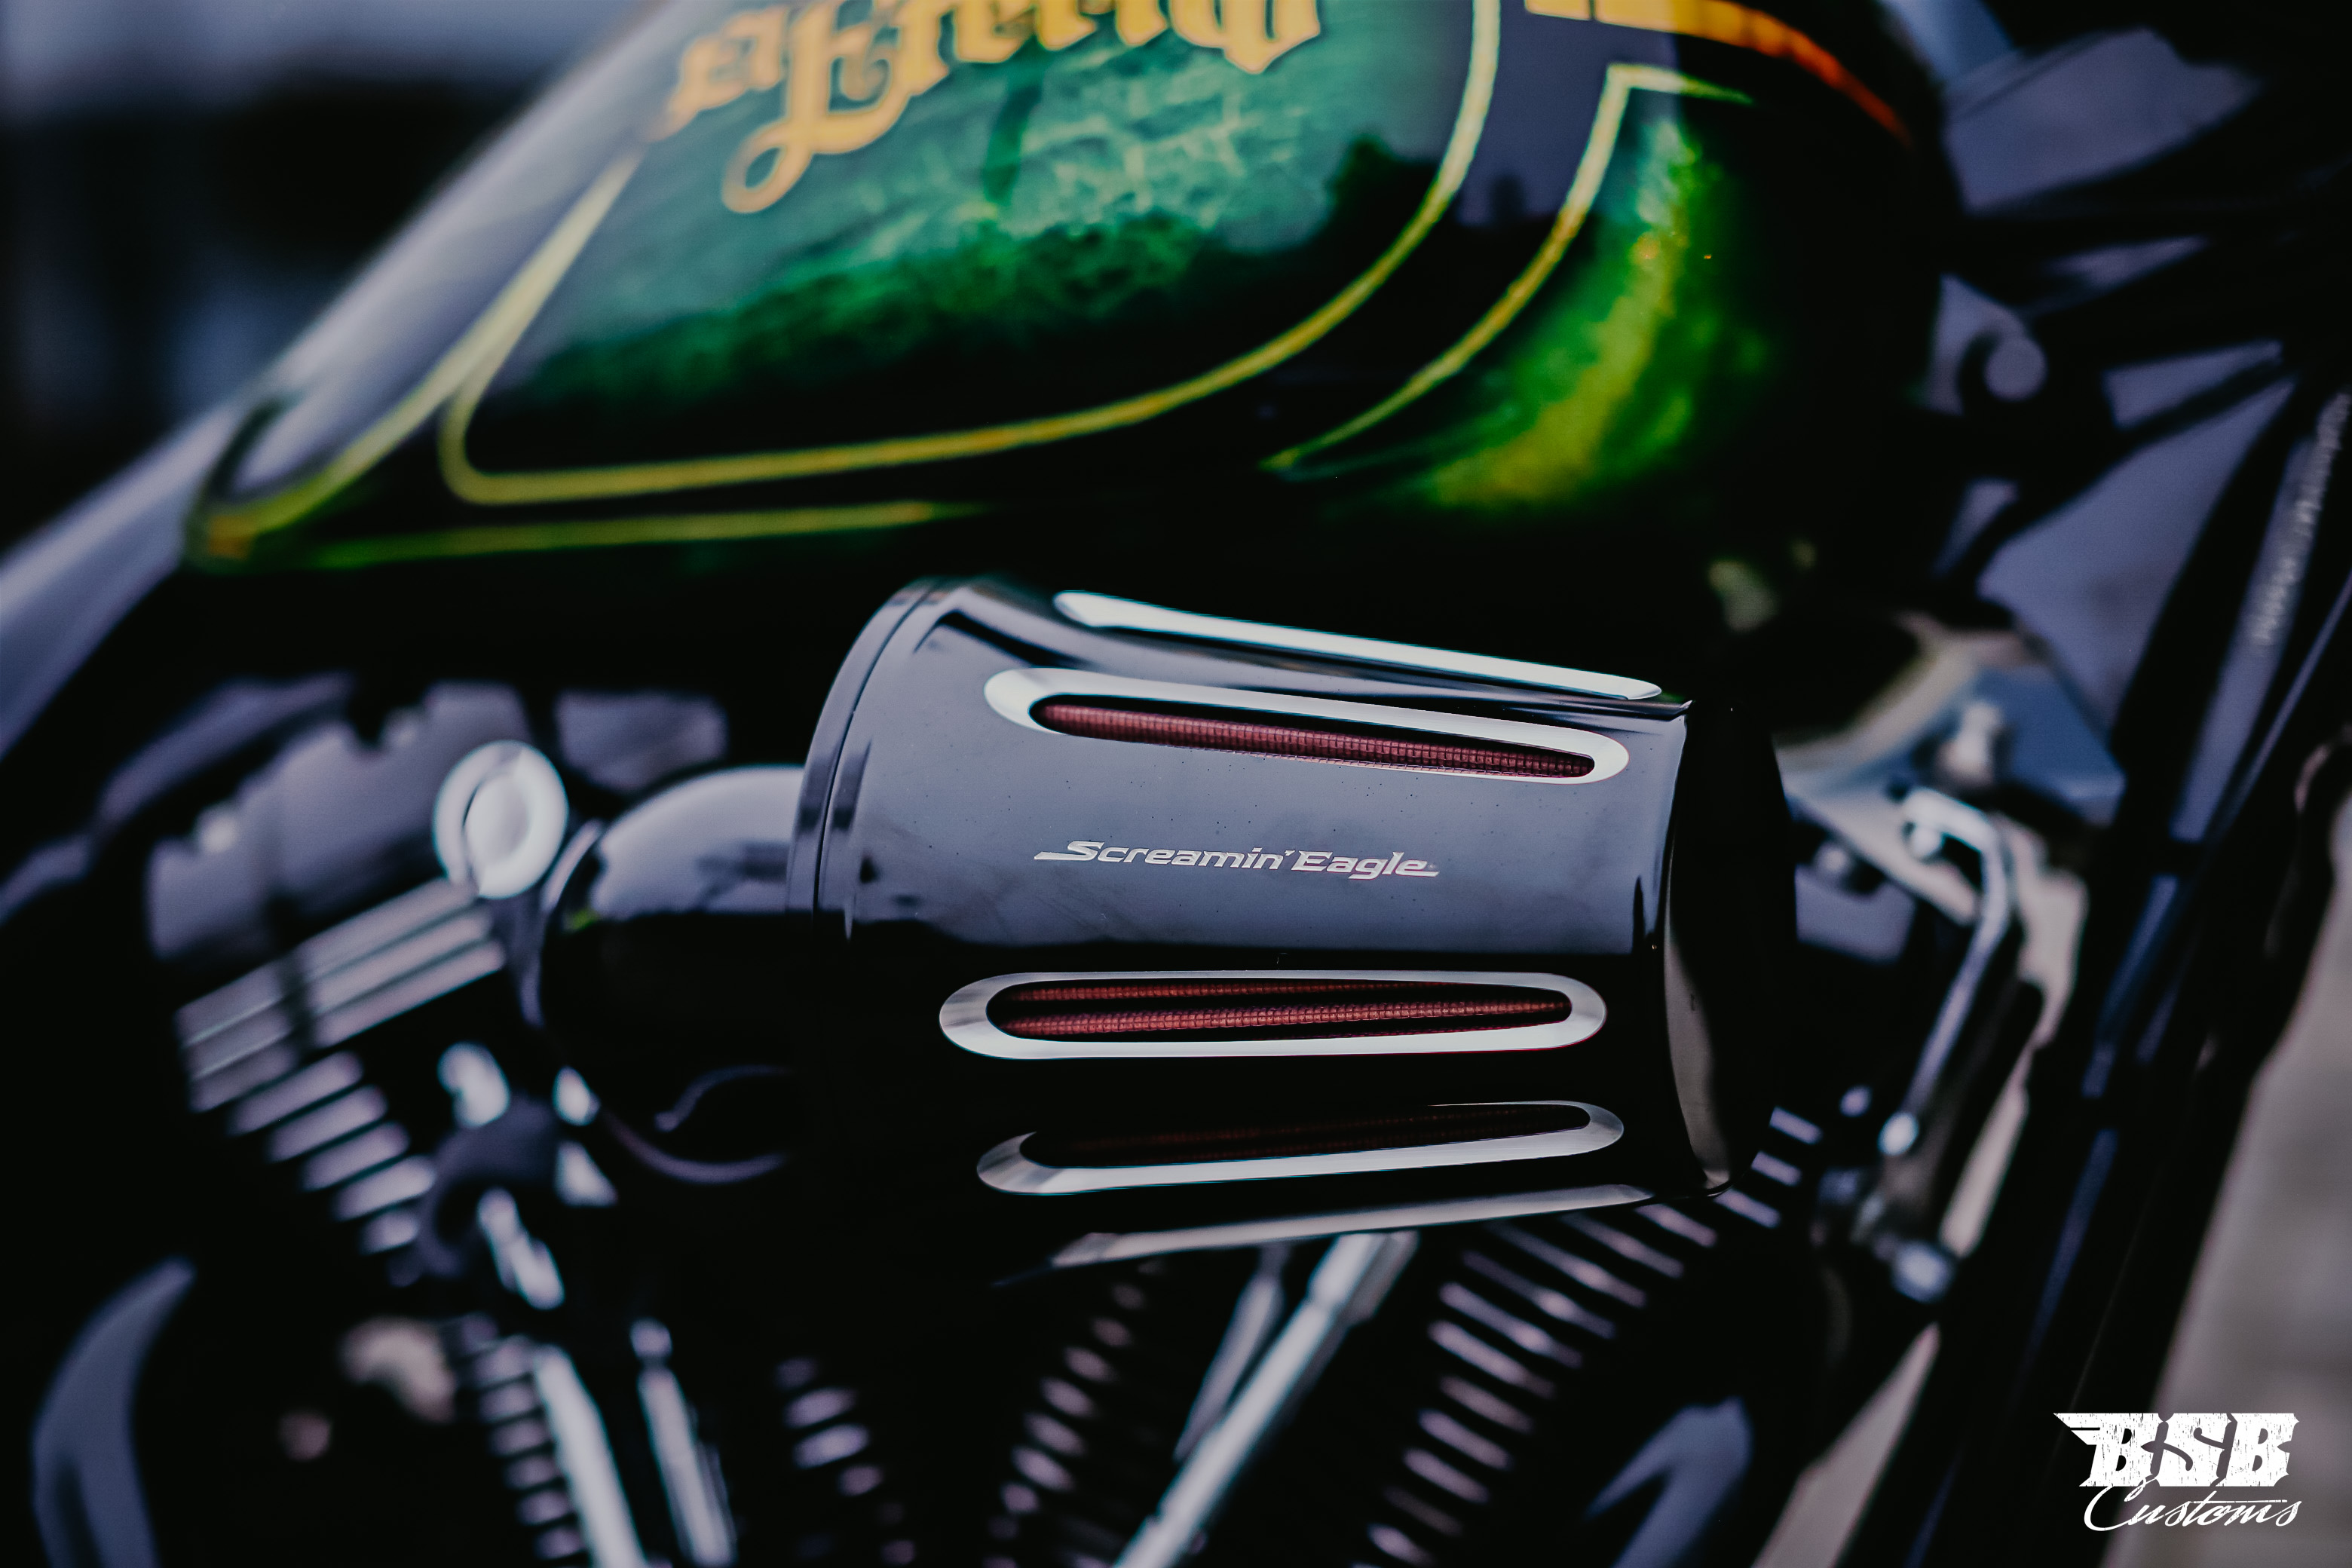 2014 Harley Davidson FLHXS Street Glide mit einem Mega Umbau auf Mexican Chicano Umbau 